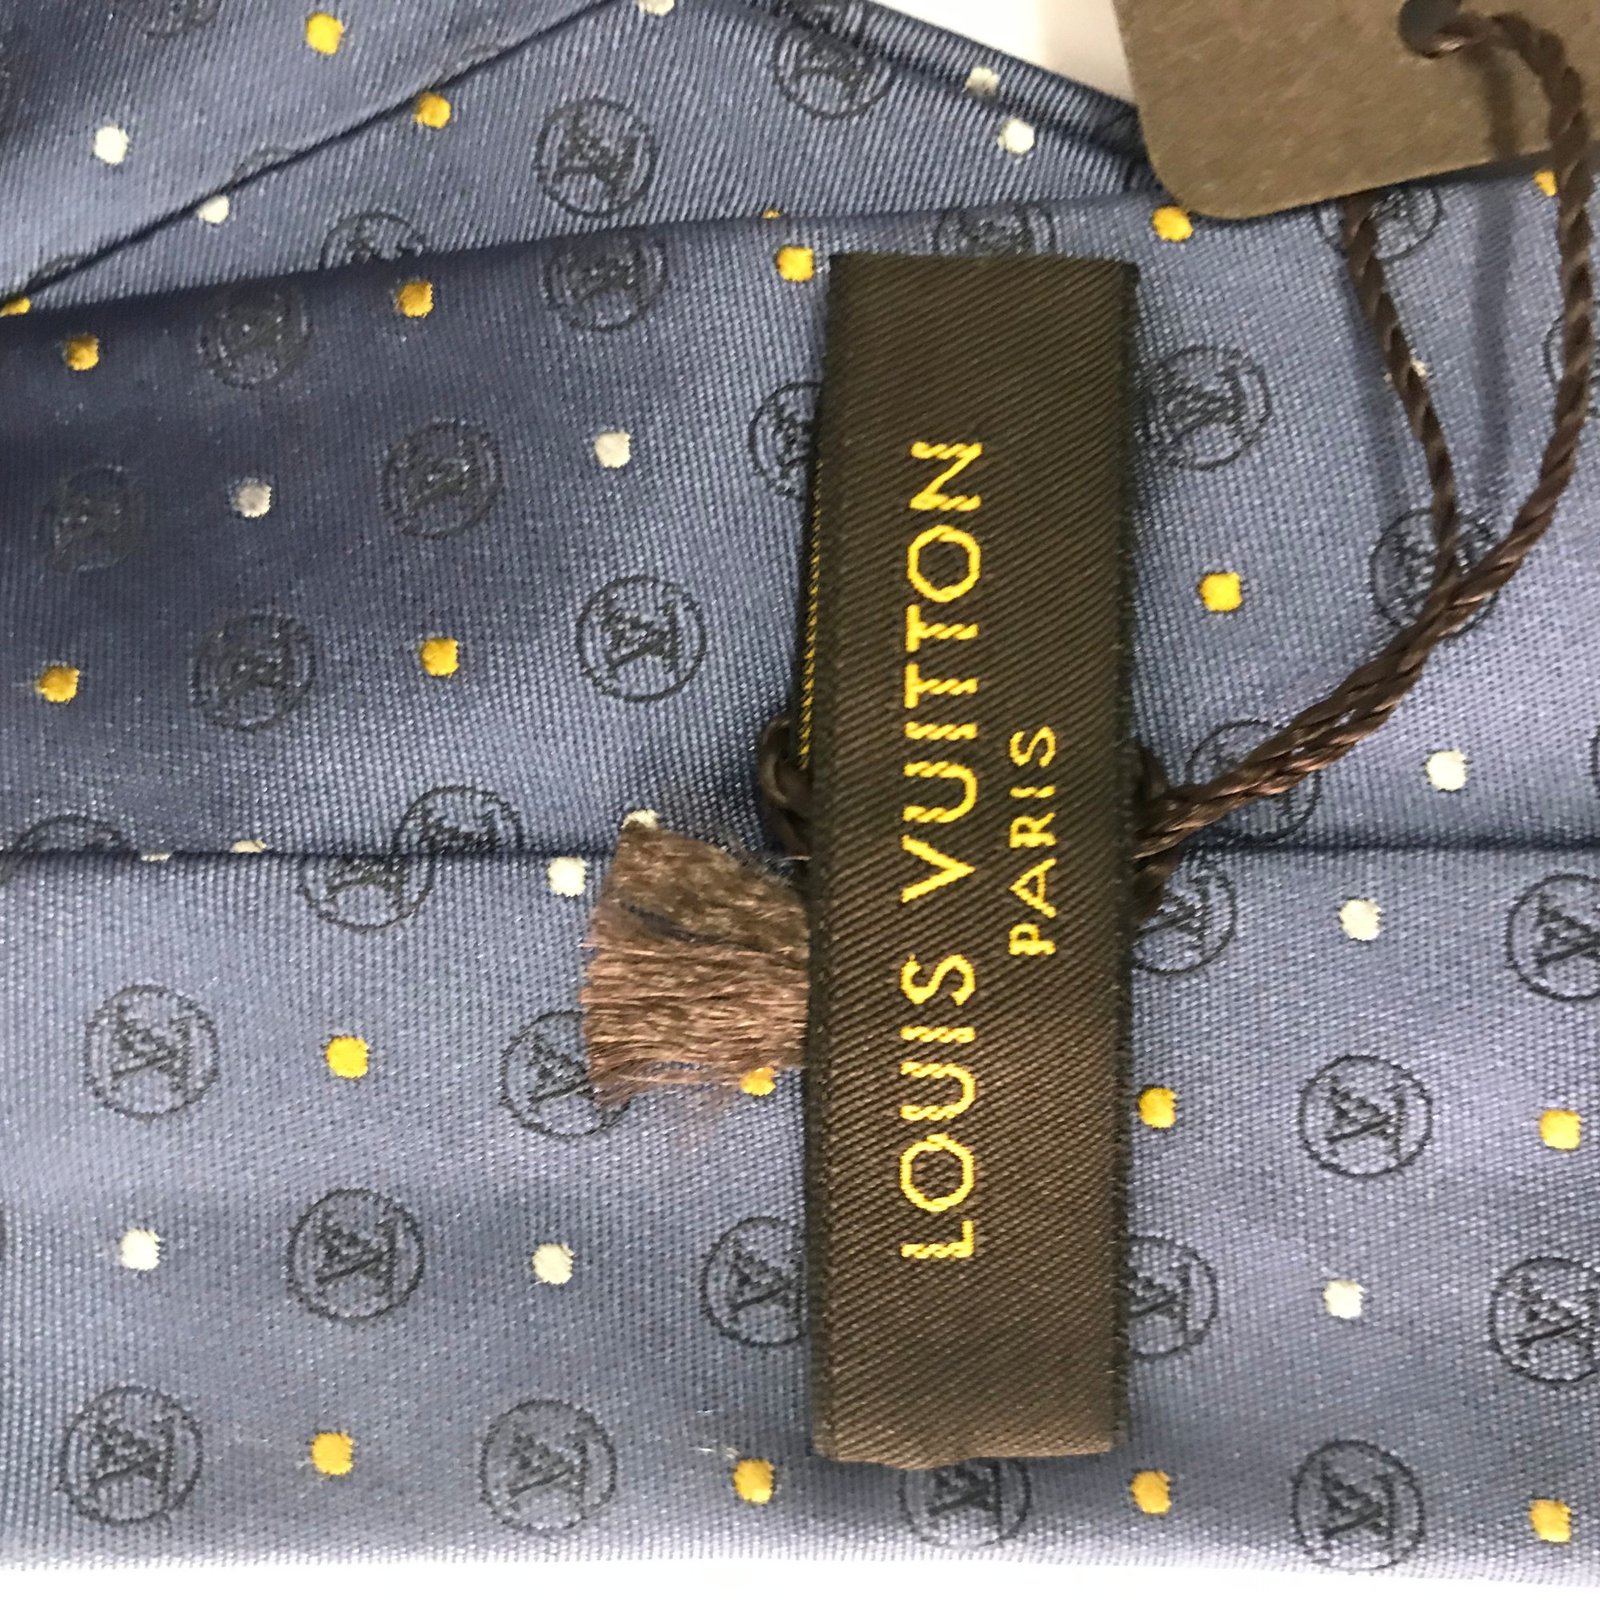 Silk tie Louis Vuitton Blue in Silk - 32449951